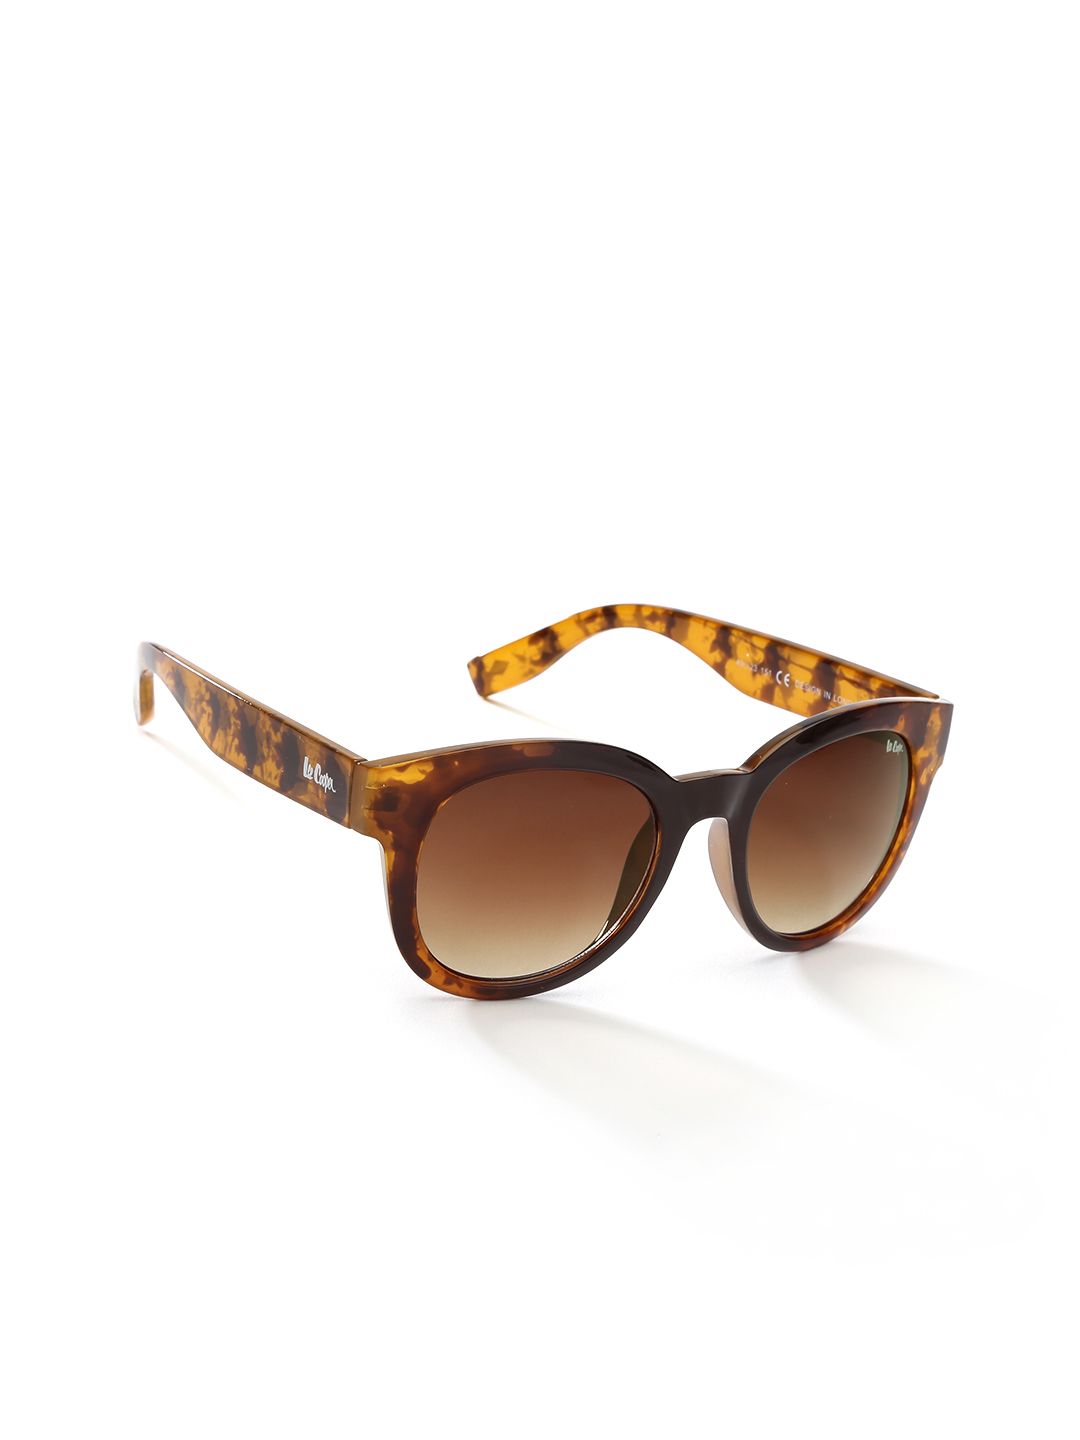 Lee Cooper Unisex Printed Polarised Oval Sunglasses LC9093SXA Price in India